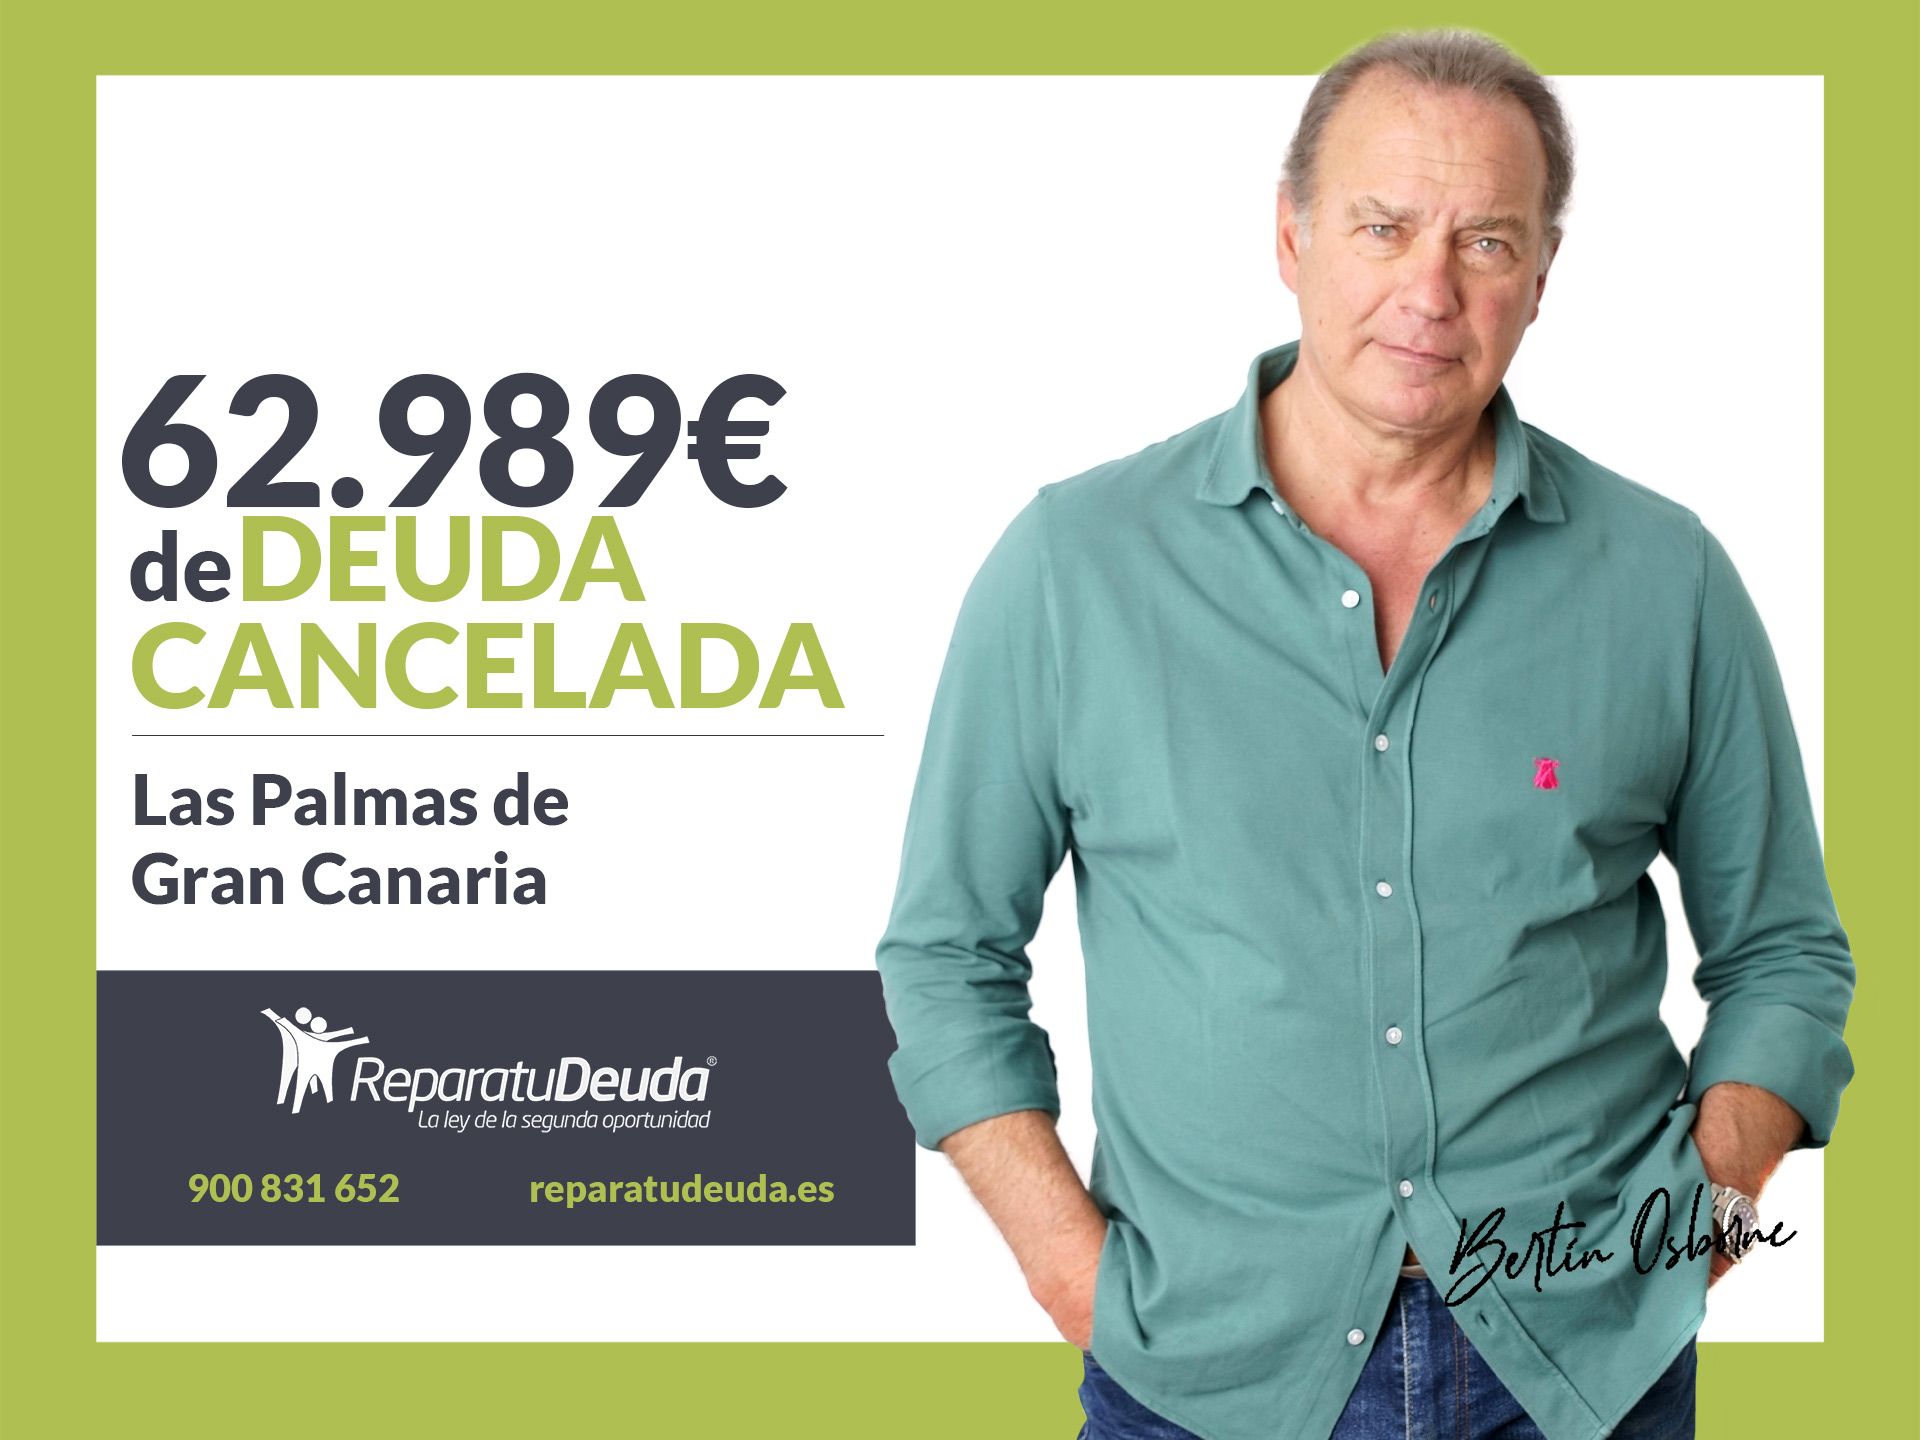 Repara tu Deuda Abogados cancela 62.989? en Las Palmas de Gran Canaria con la Ley de Segunda Oportunidad